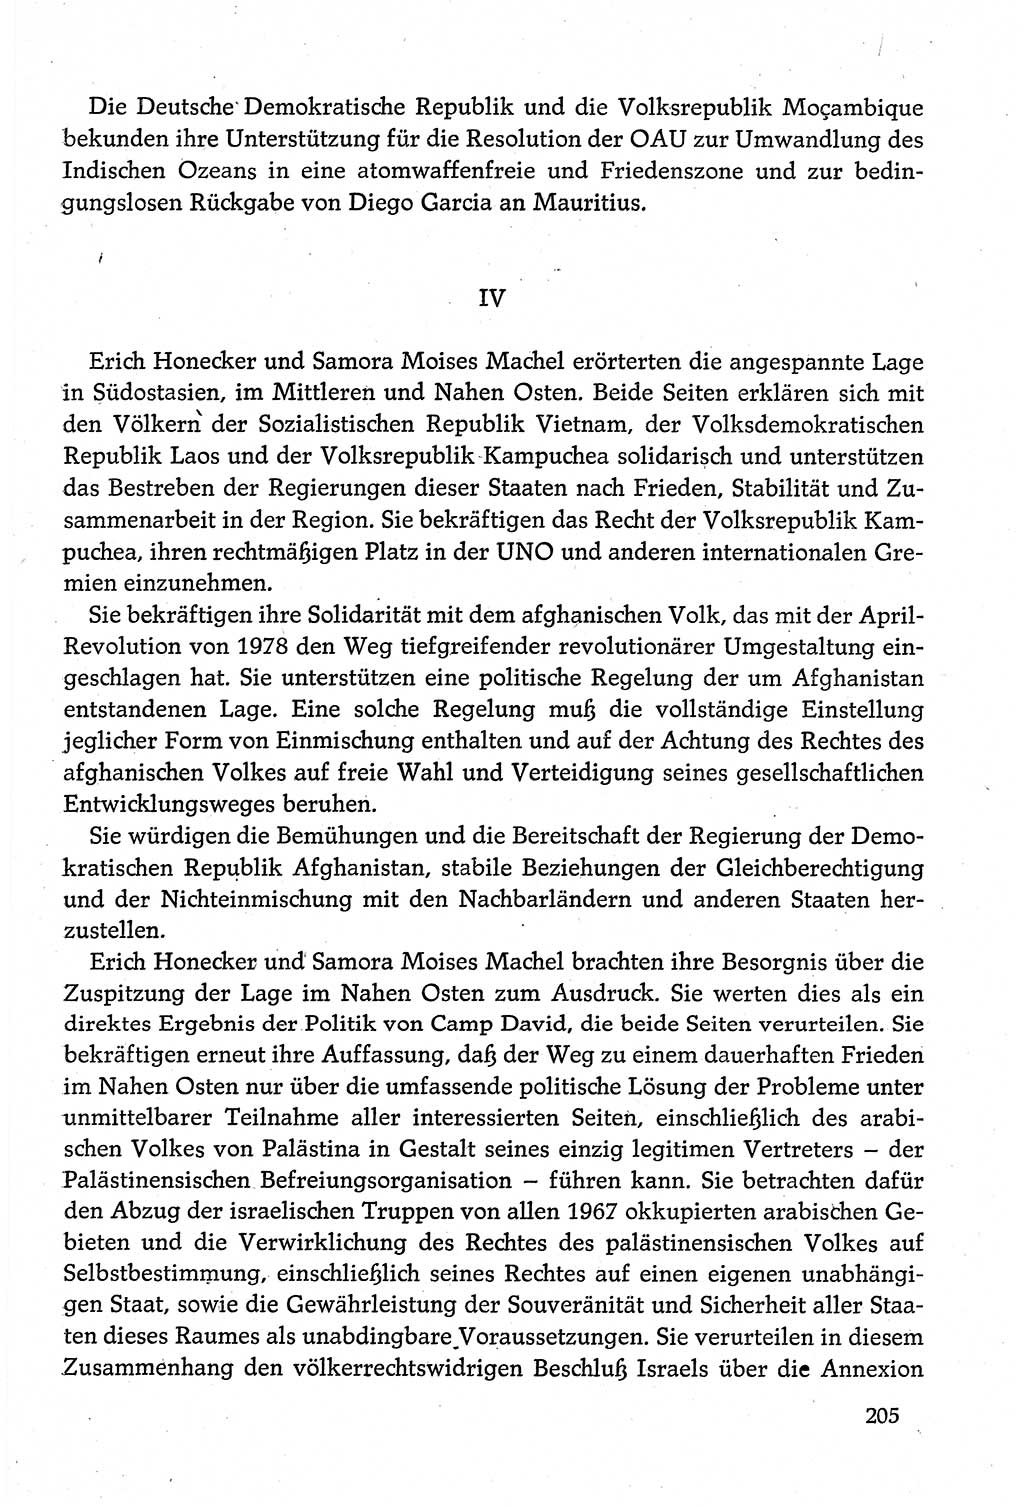 Dokumente der Sozialistischen Einheitspartei Deutschlands (SED) [Deutsche Demokratische Republik (DDR)] 1980-1981, Seite 205 (Dok. SED DDR 1980-1981, S. 205)